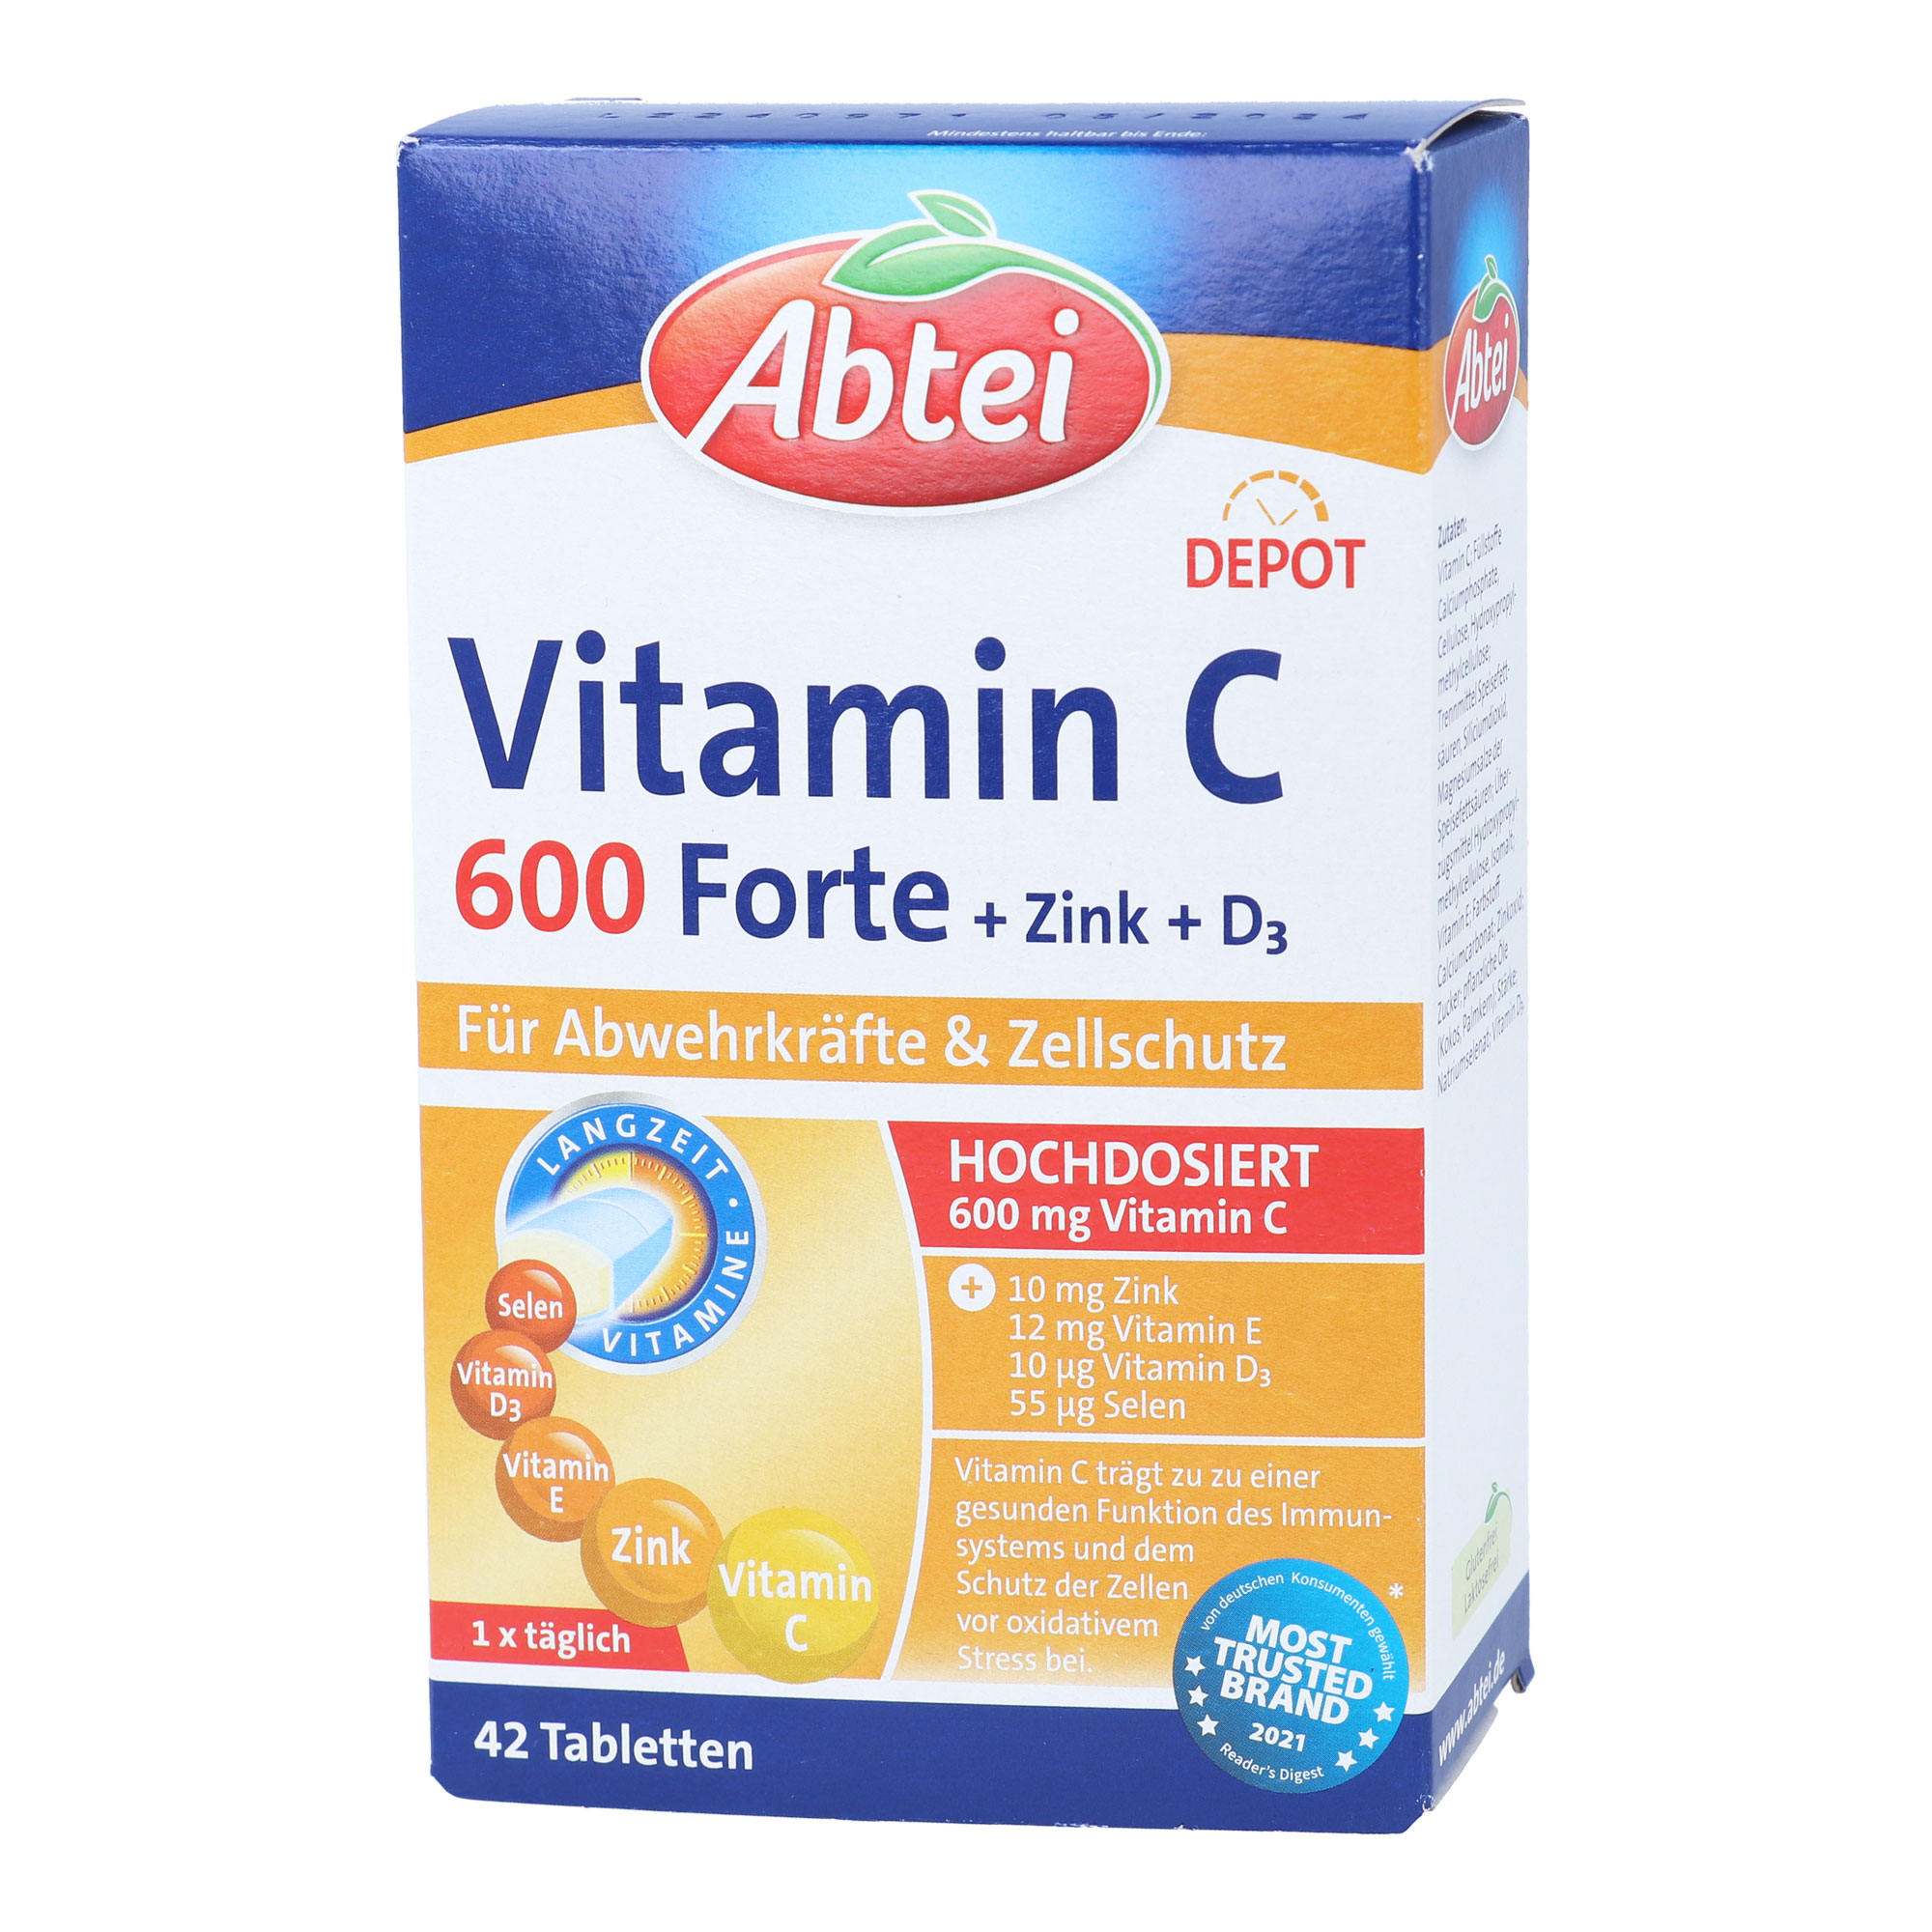 Nahrungsergänzungsmittel mit hochdosiertem Vitamin C, Zink, Vitamin E, Vitamin D3 und Selen.